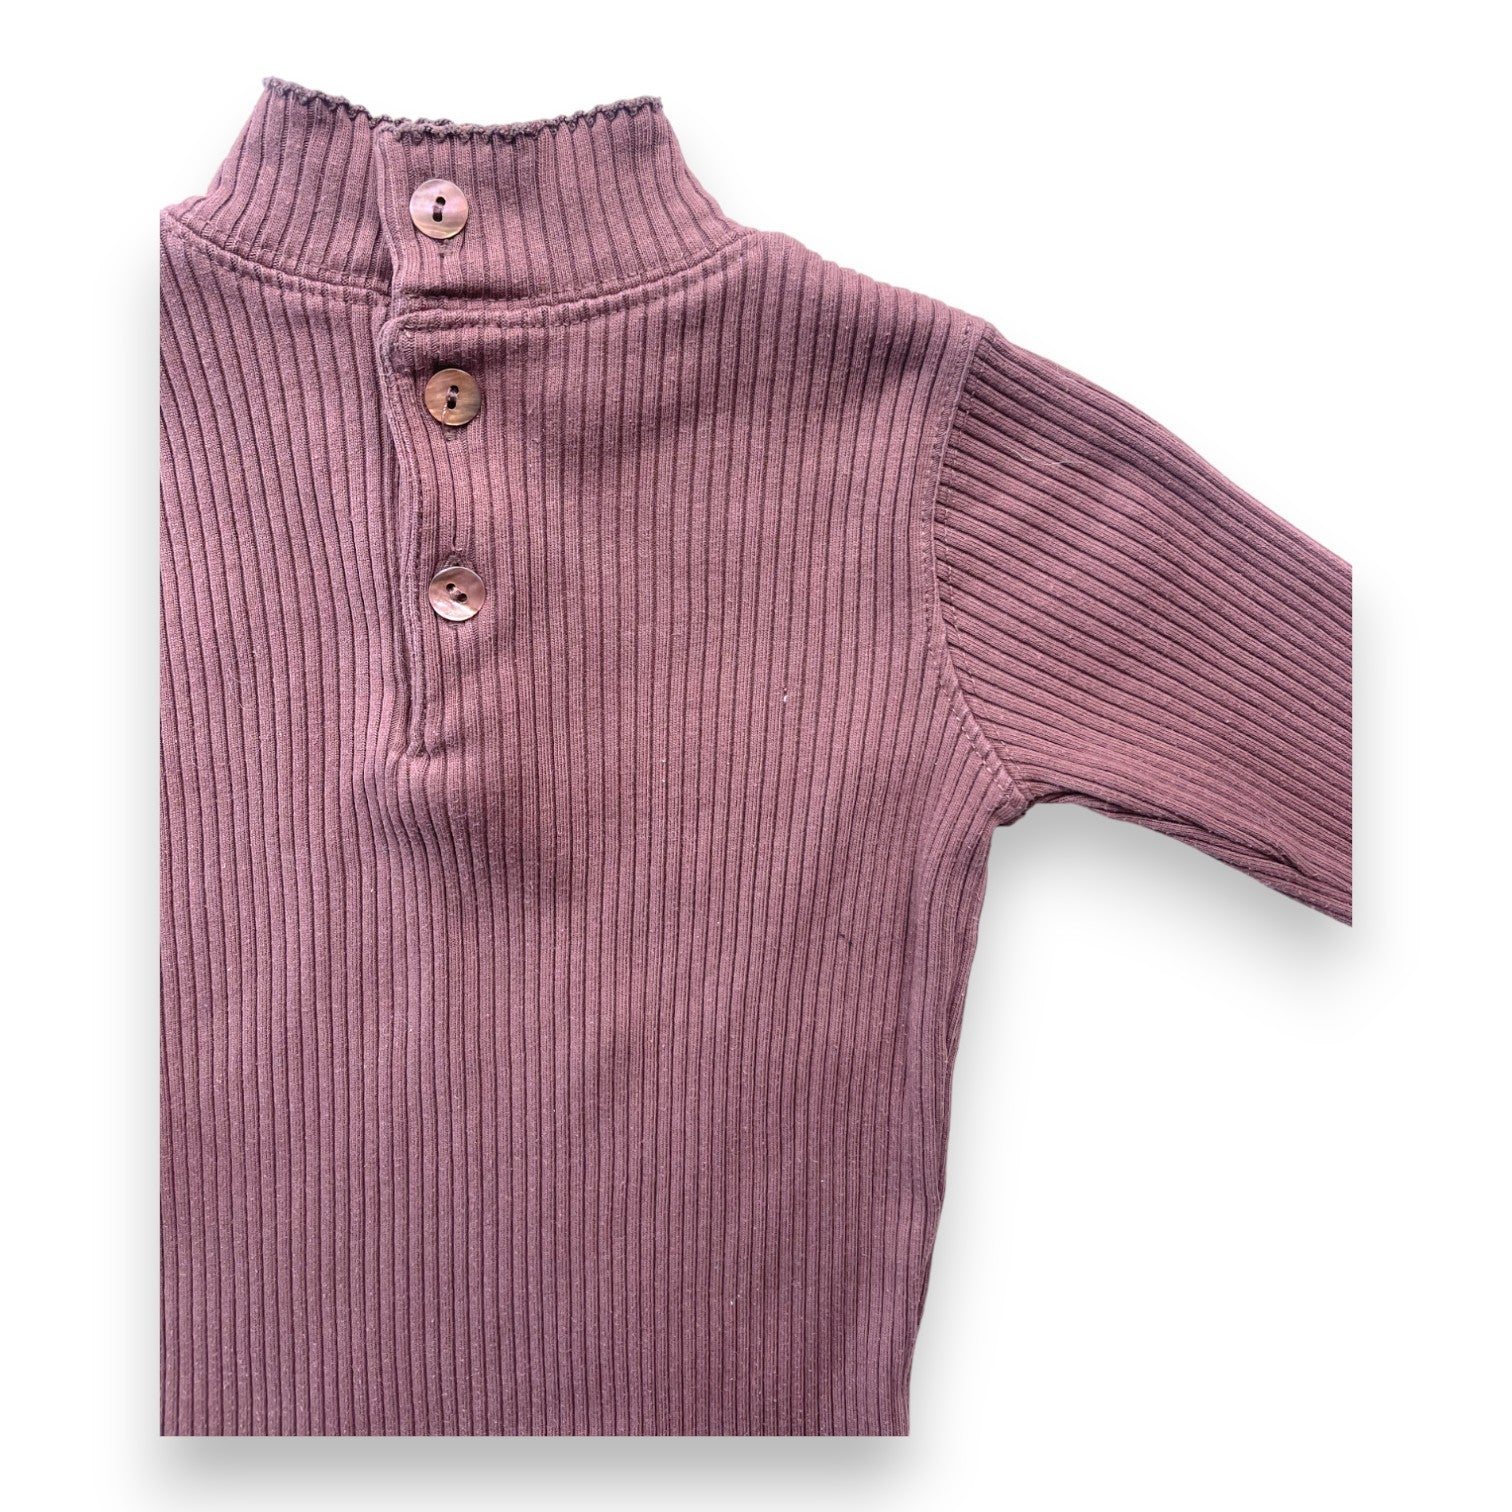 LILI GAUFRETTE - Sous pull côtelé violet - 18 mois